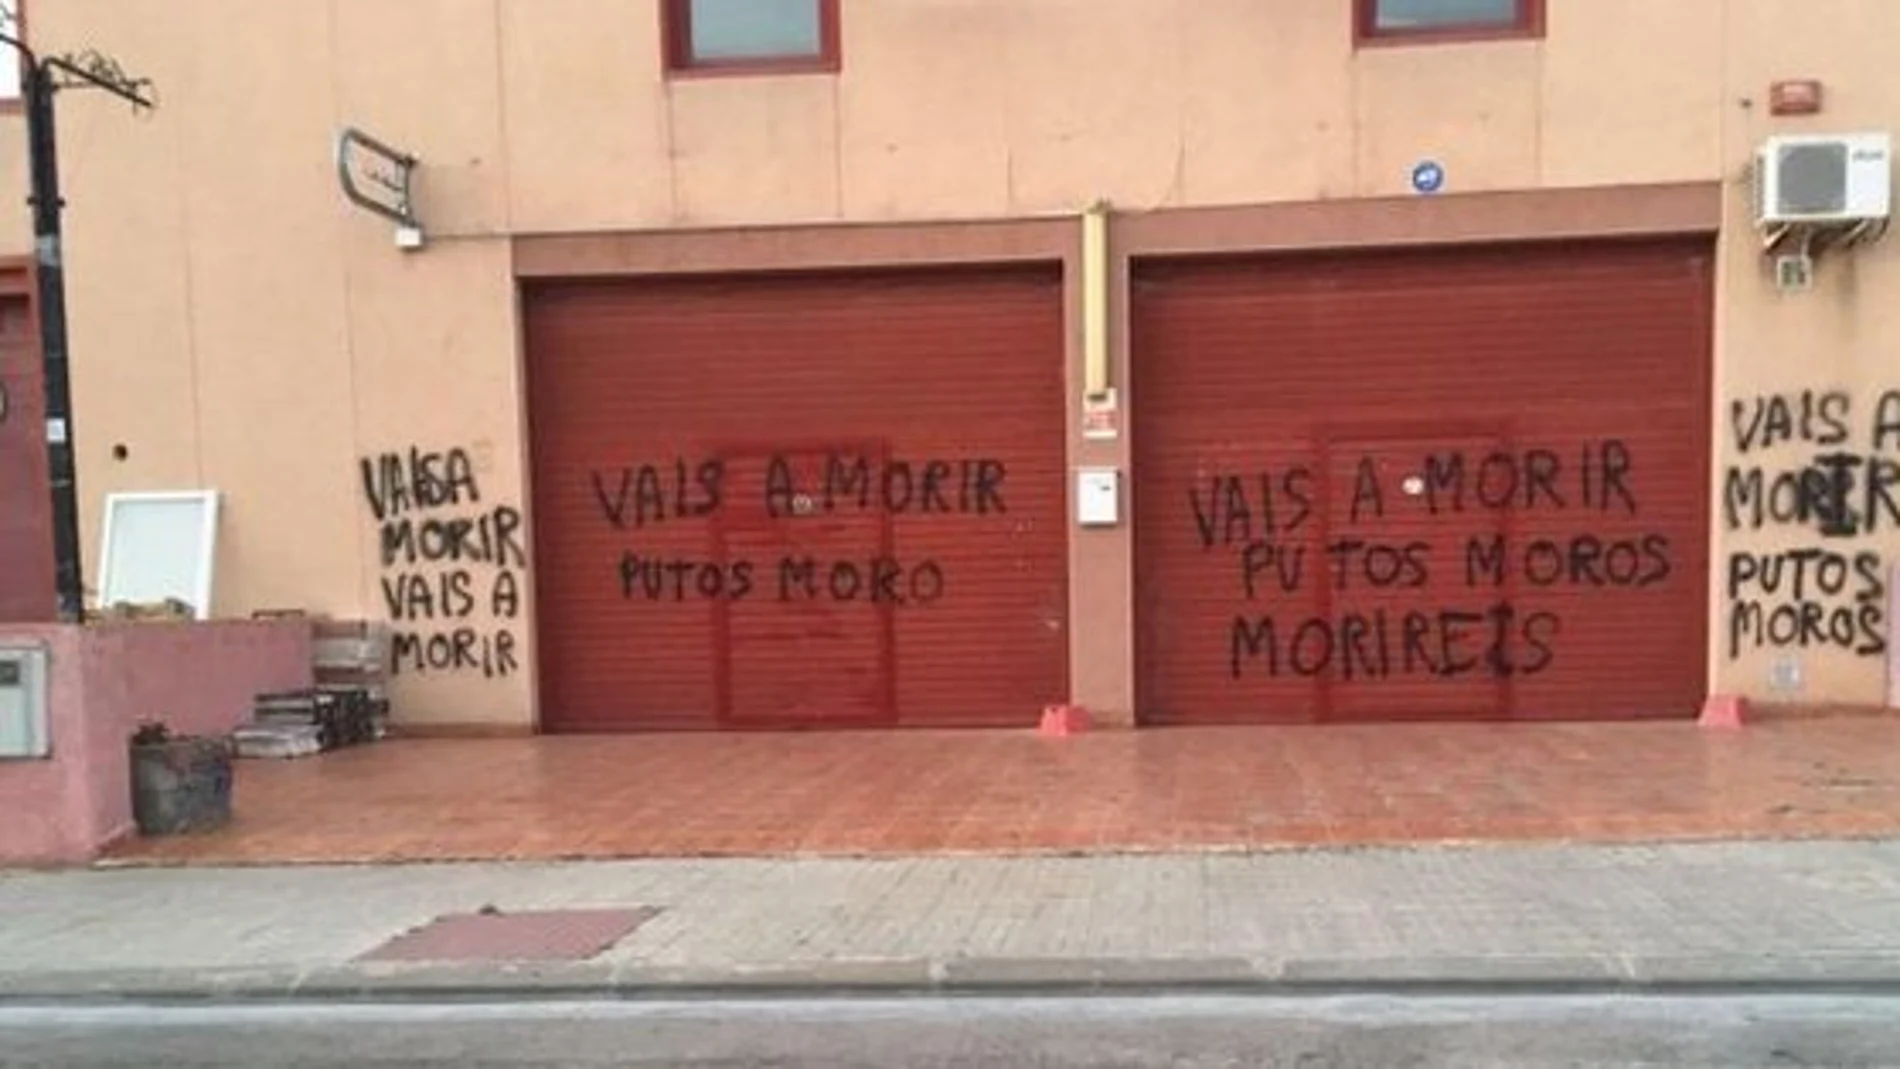 Pintadas xenófobas en Tarragona tras los atentados de Barcelona y Cambrils